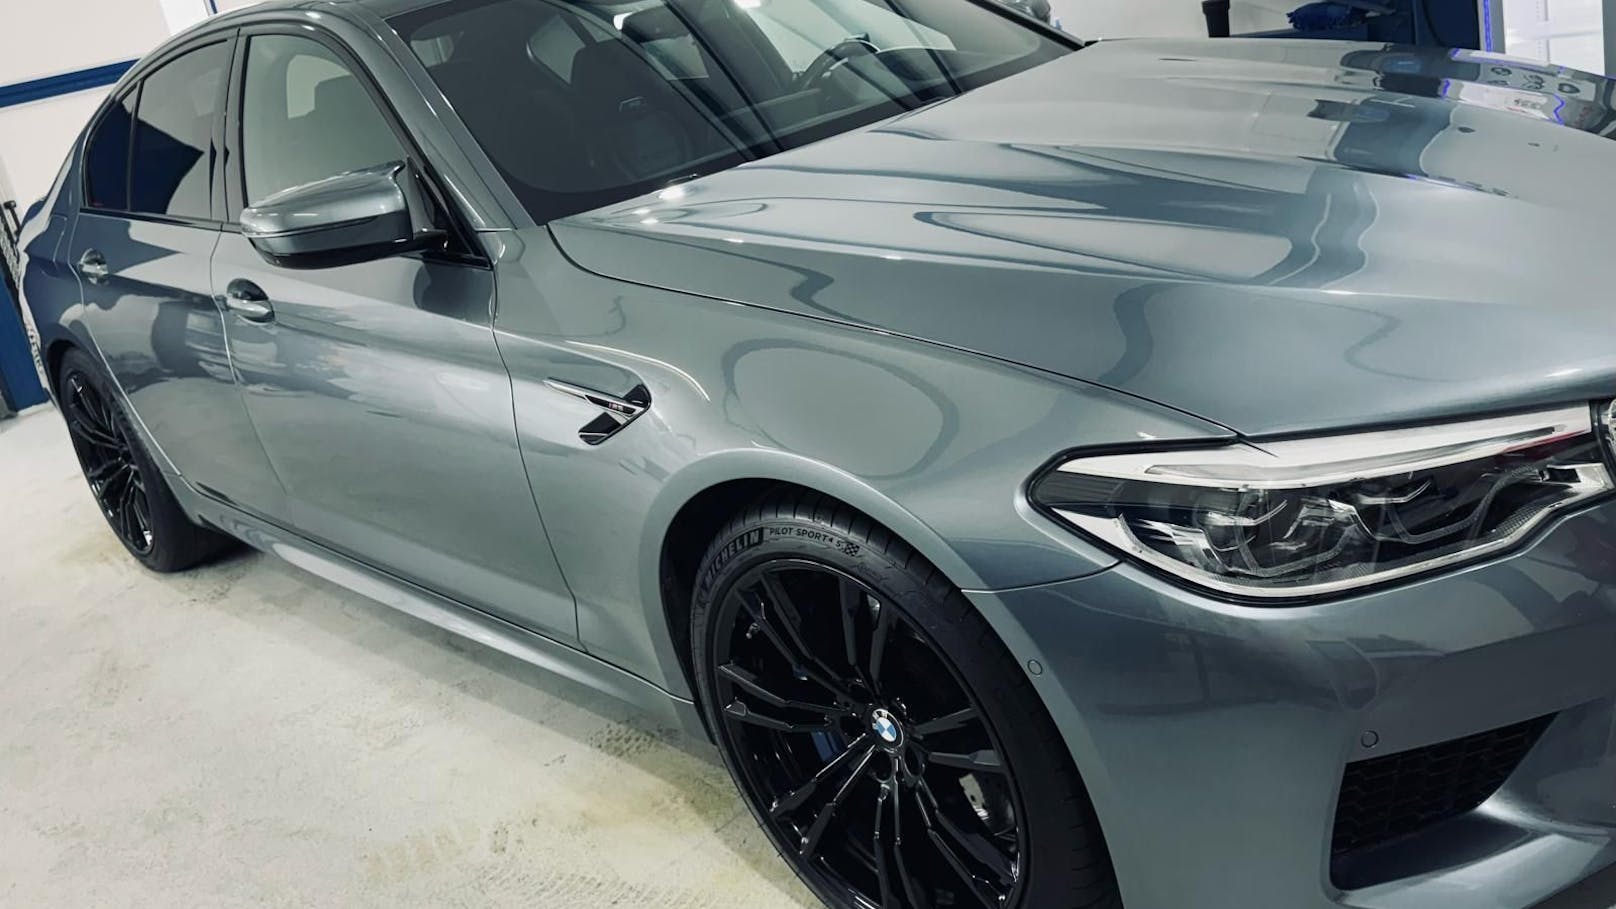 BMW-Bande: Auch gestohlener 600-PS-Bolide wieder da